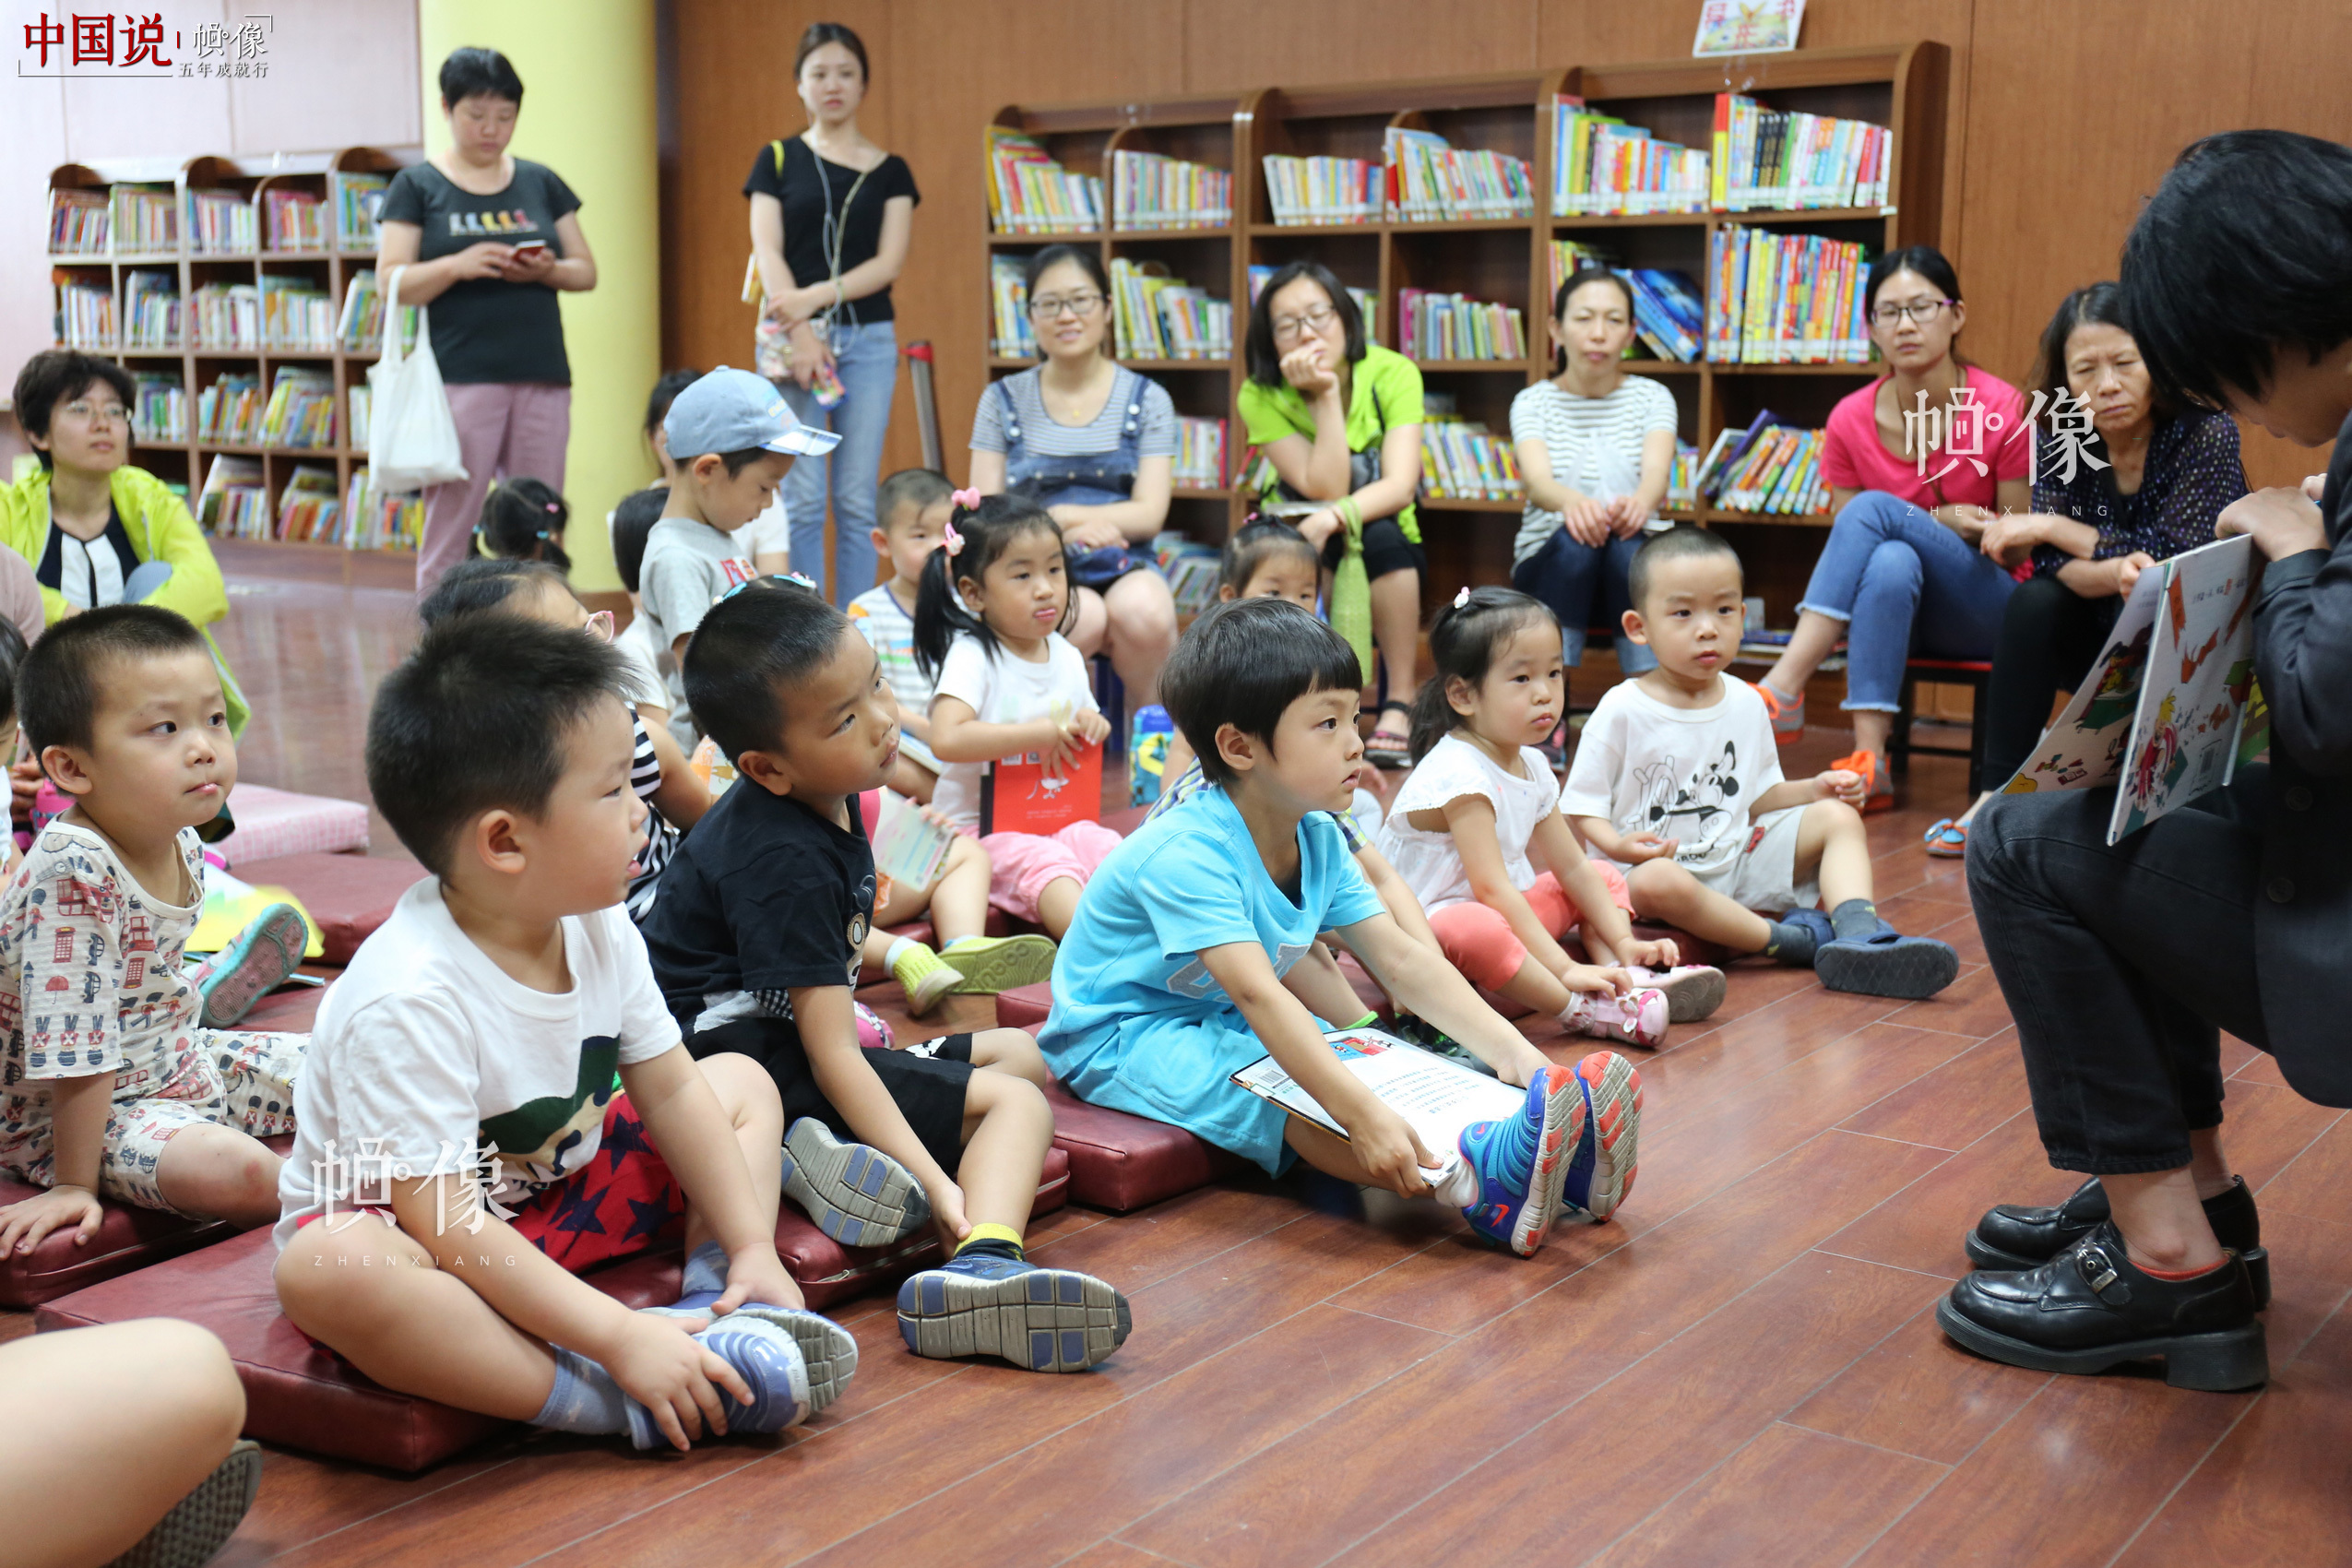 5月26日，北京国家图书馆，工作人员在给小朋友读童话书。 中国网记者 吴佳潼 摄